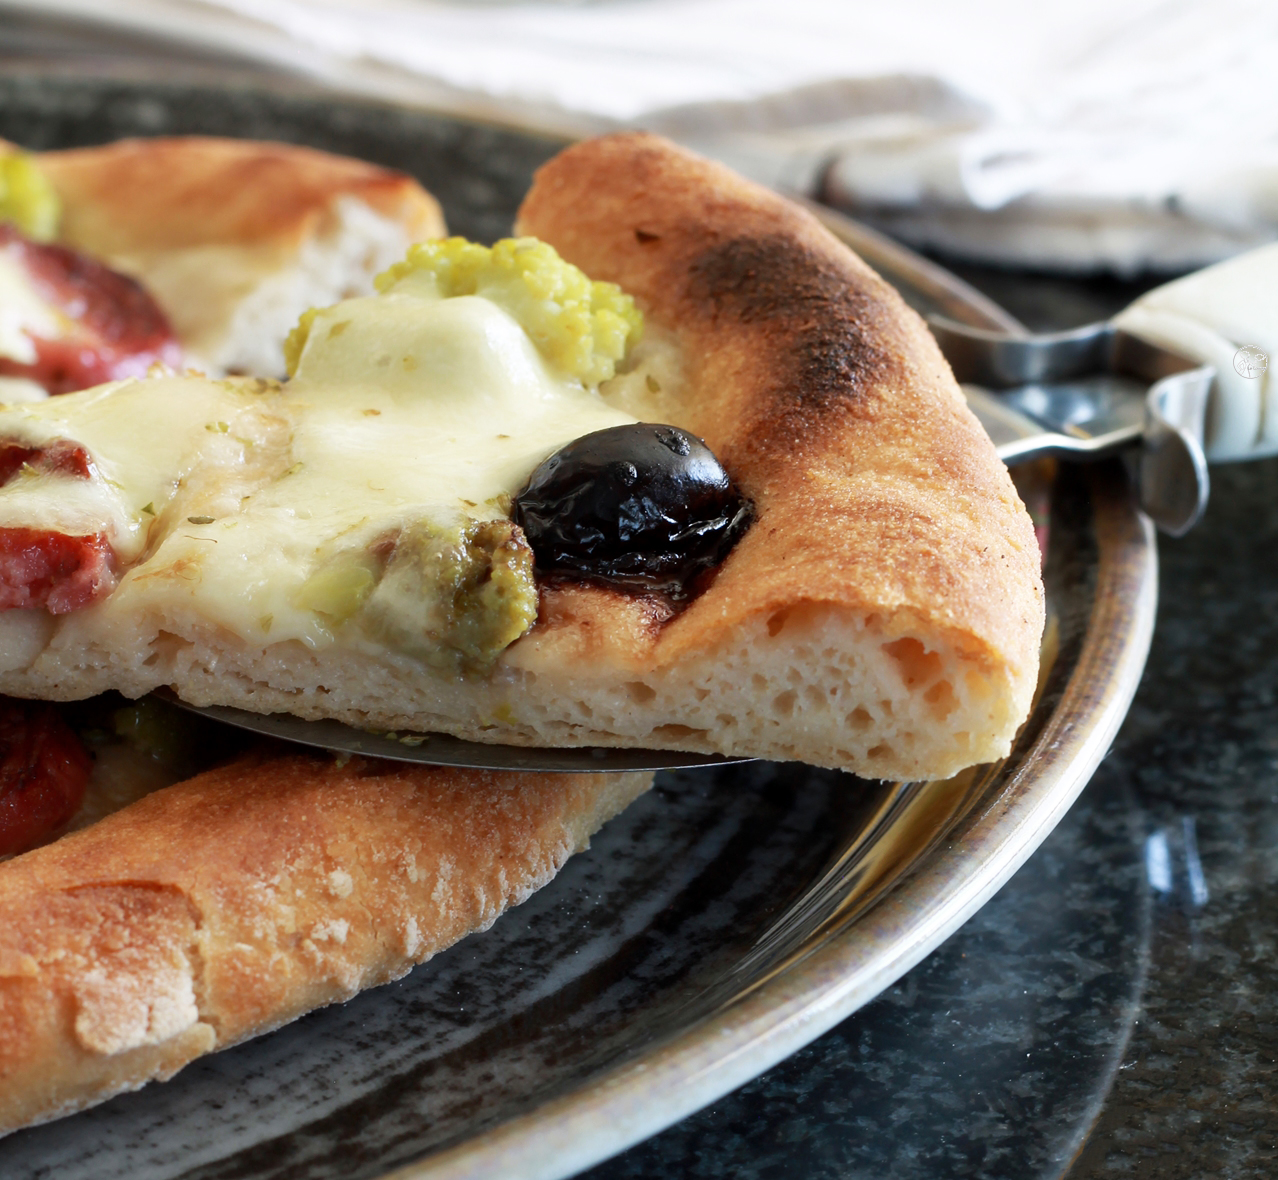 Pizza sans gluten et sans mix du commerce en vidéo - La Cassata Celiaca